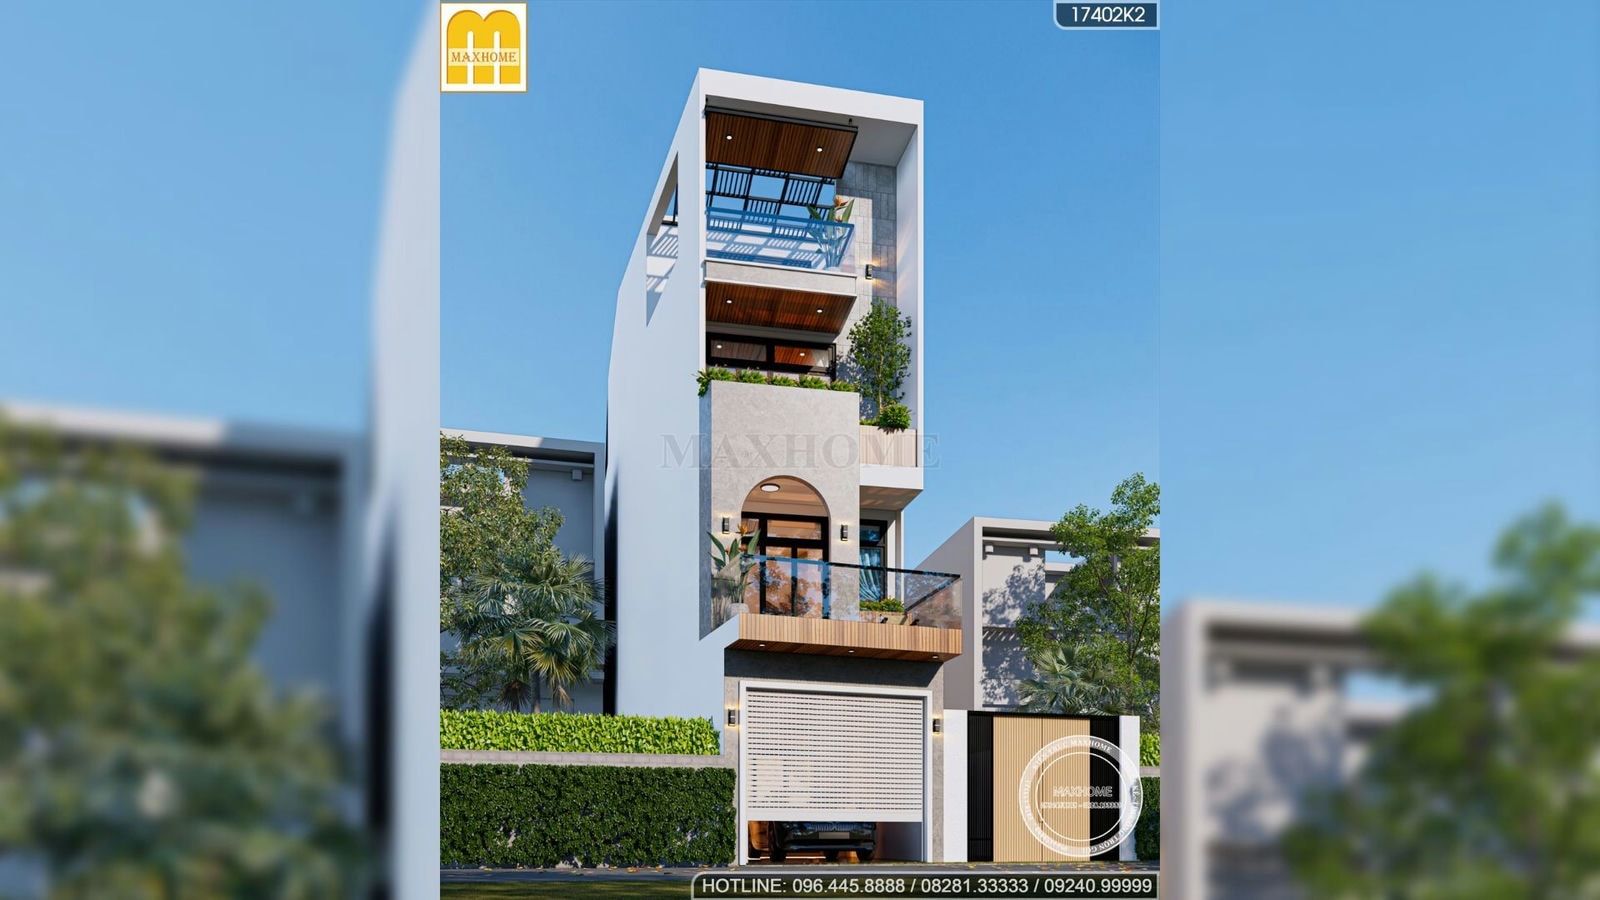 Maxhome thiết kế nhà phố 4 tầng độc đáo ở Hà Đông, Hà Nội | MH01779